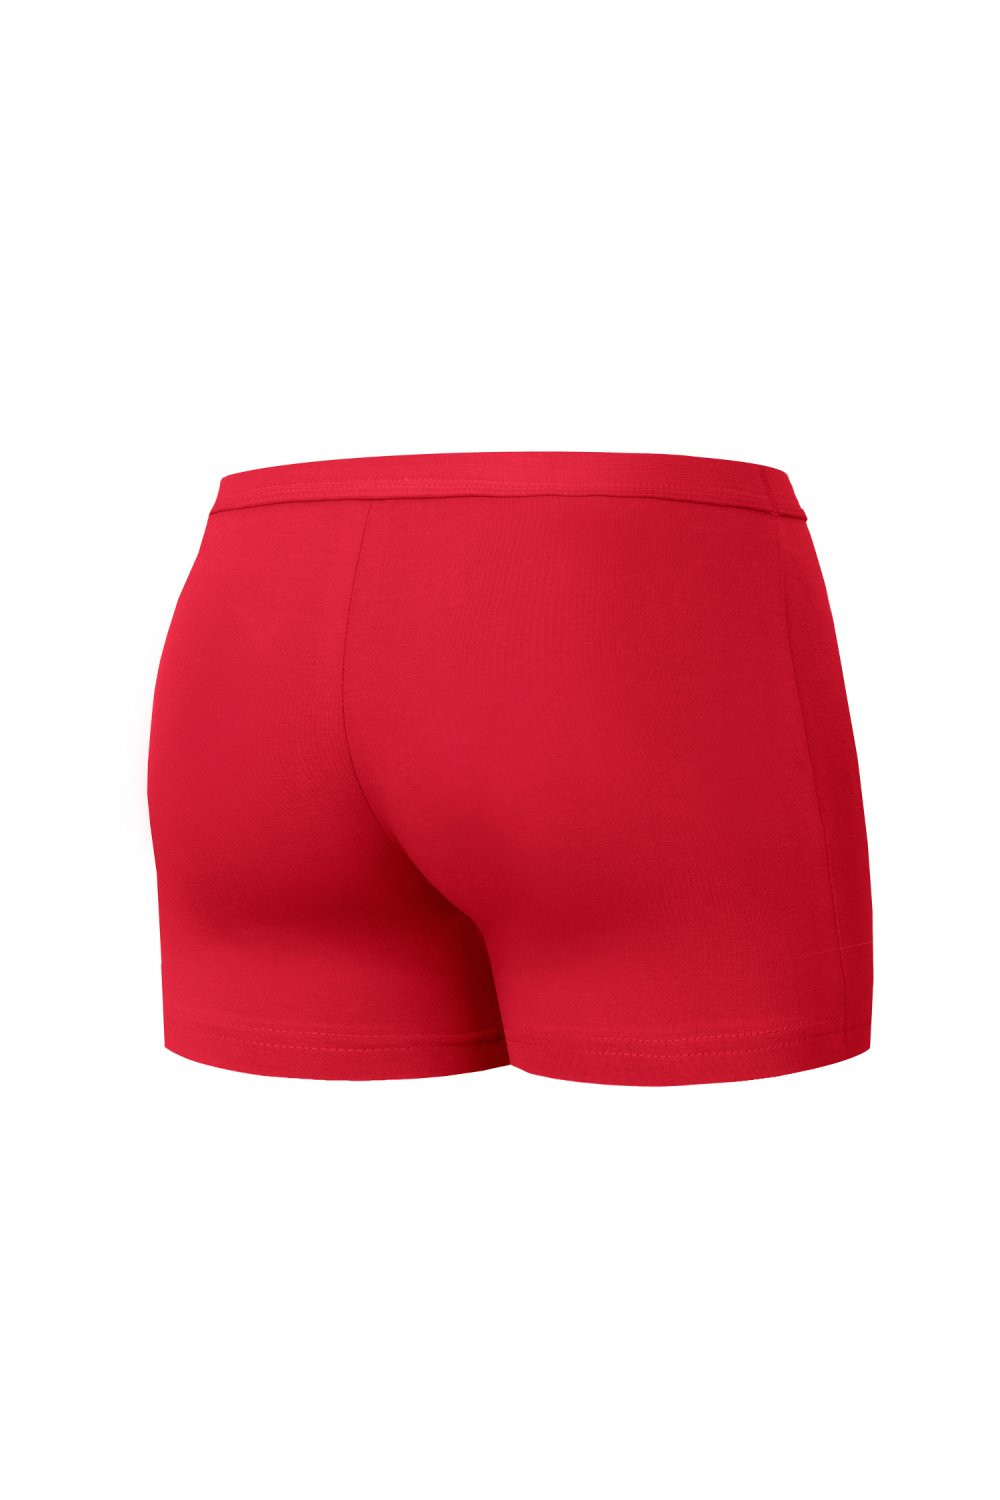 Pánské boxerky 223 Authentic mini red - CORNETTE červená XL